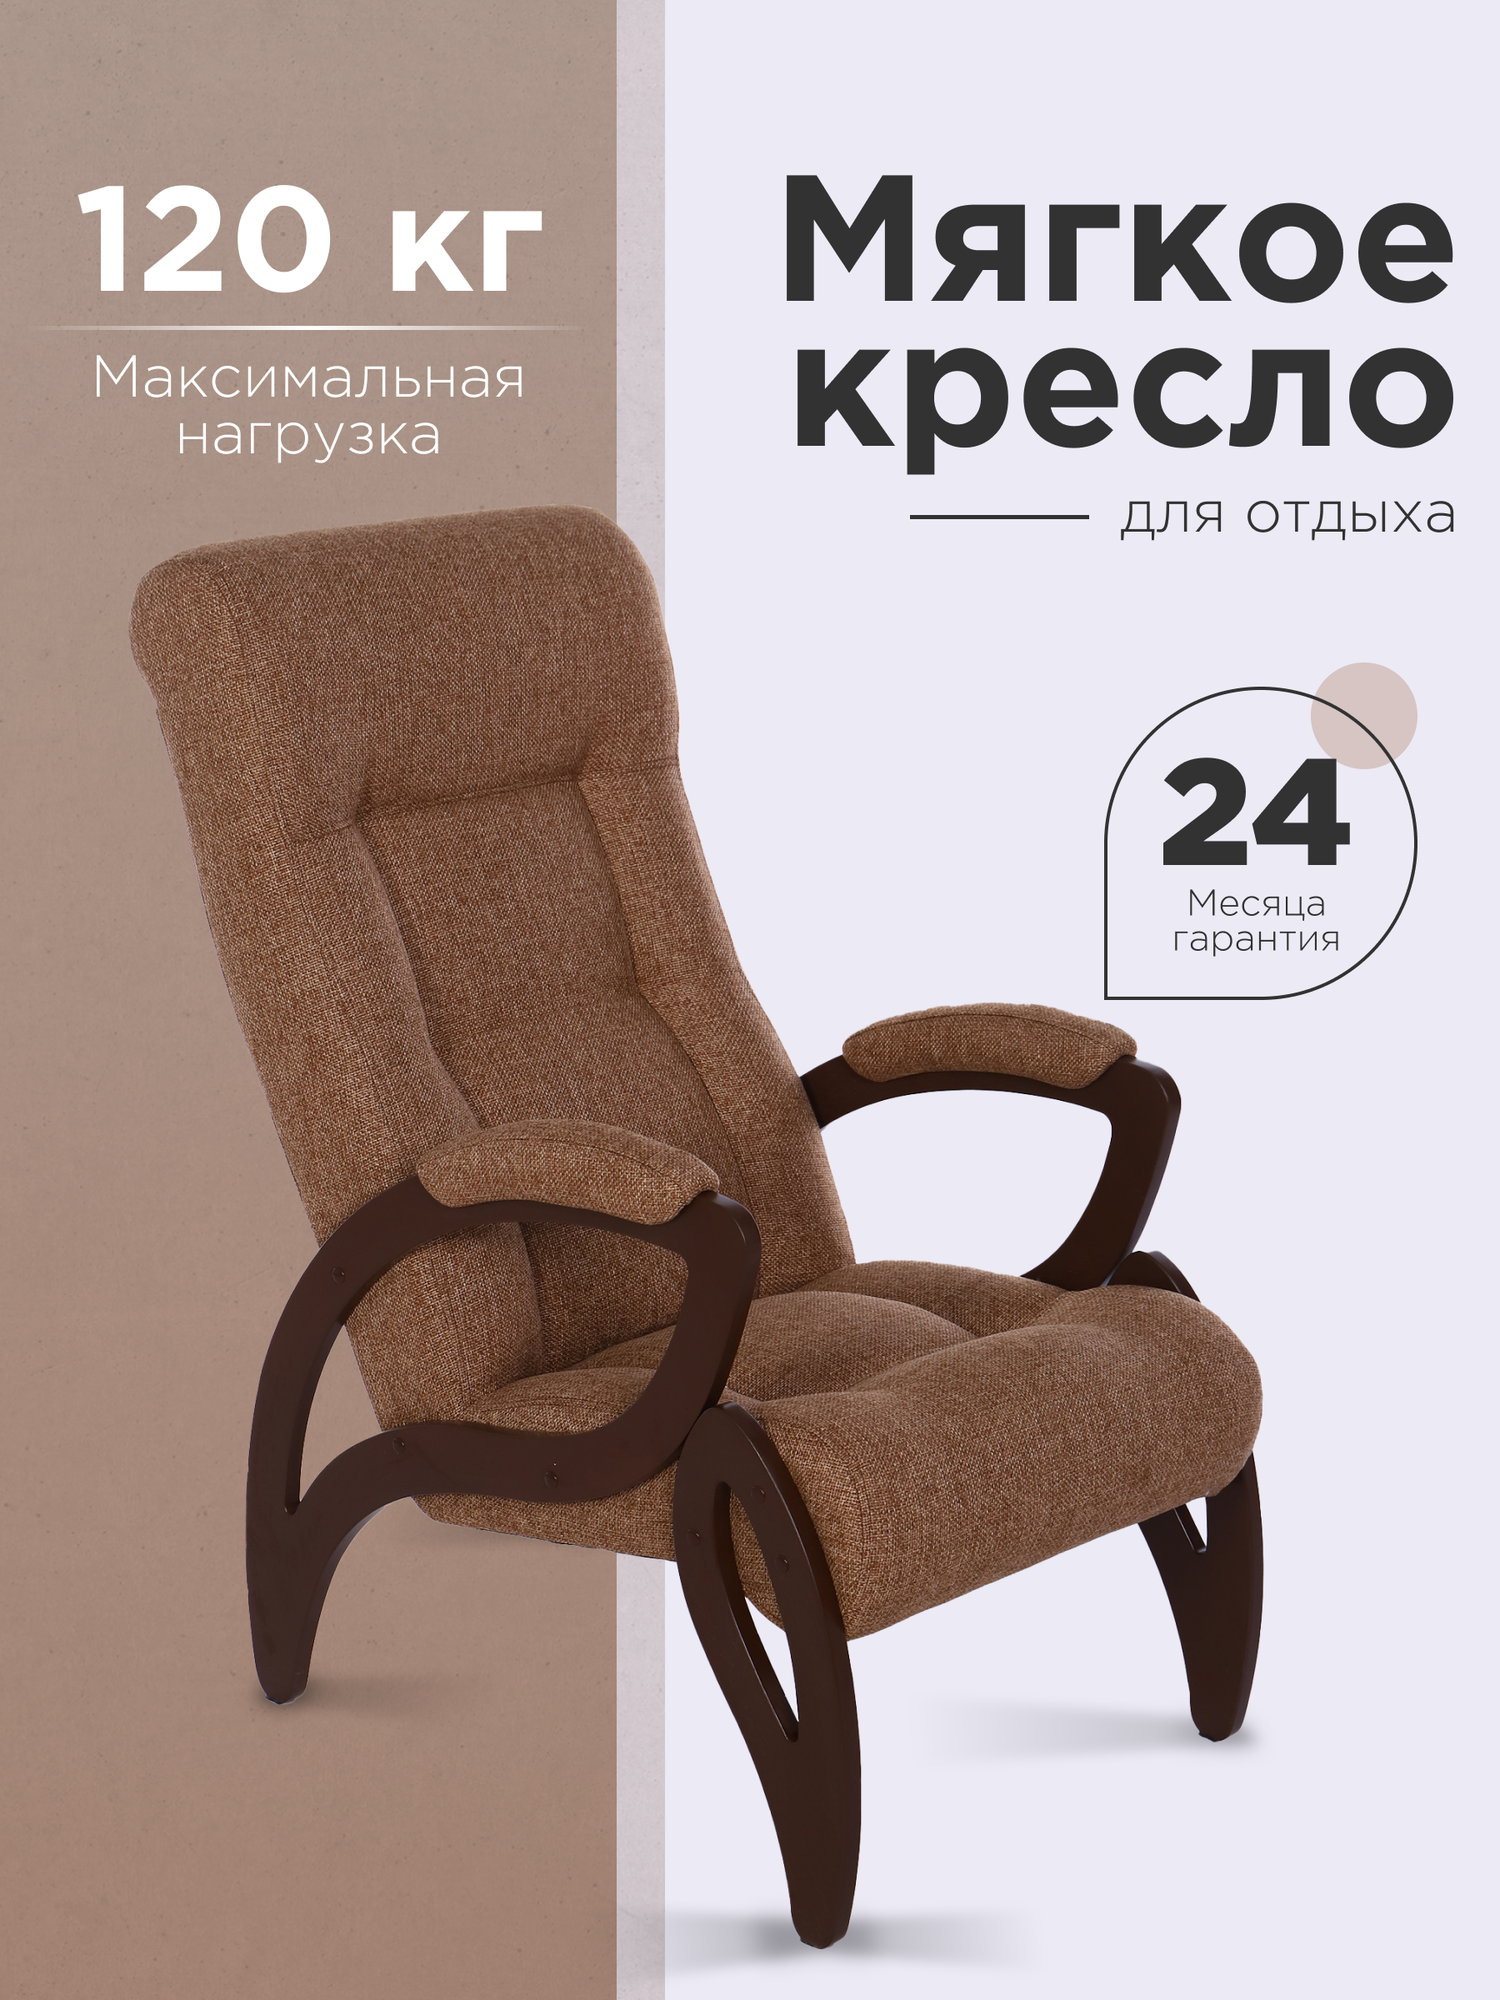 Кресло "Женева", тип ткани - рогожка, цвет светло-коричневый, ДеСтейл